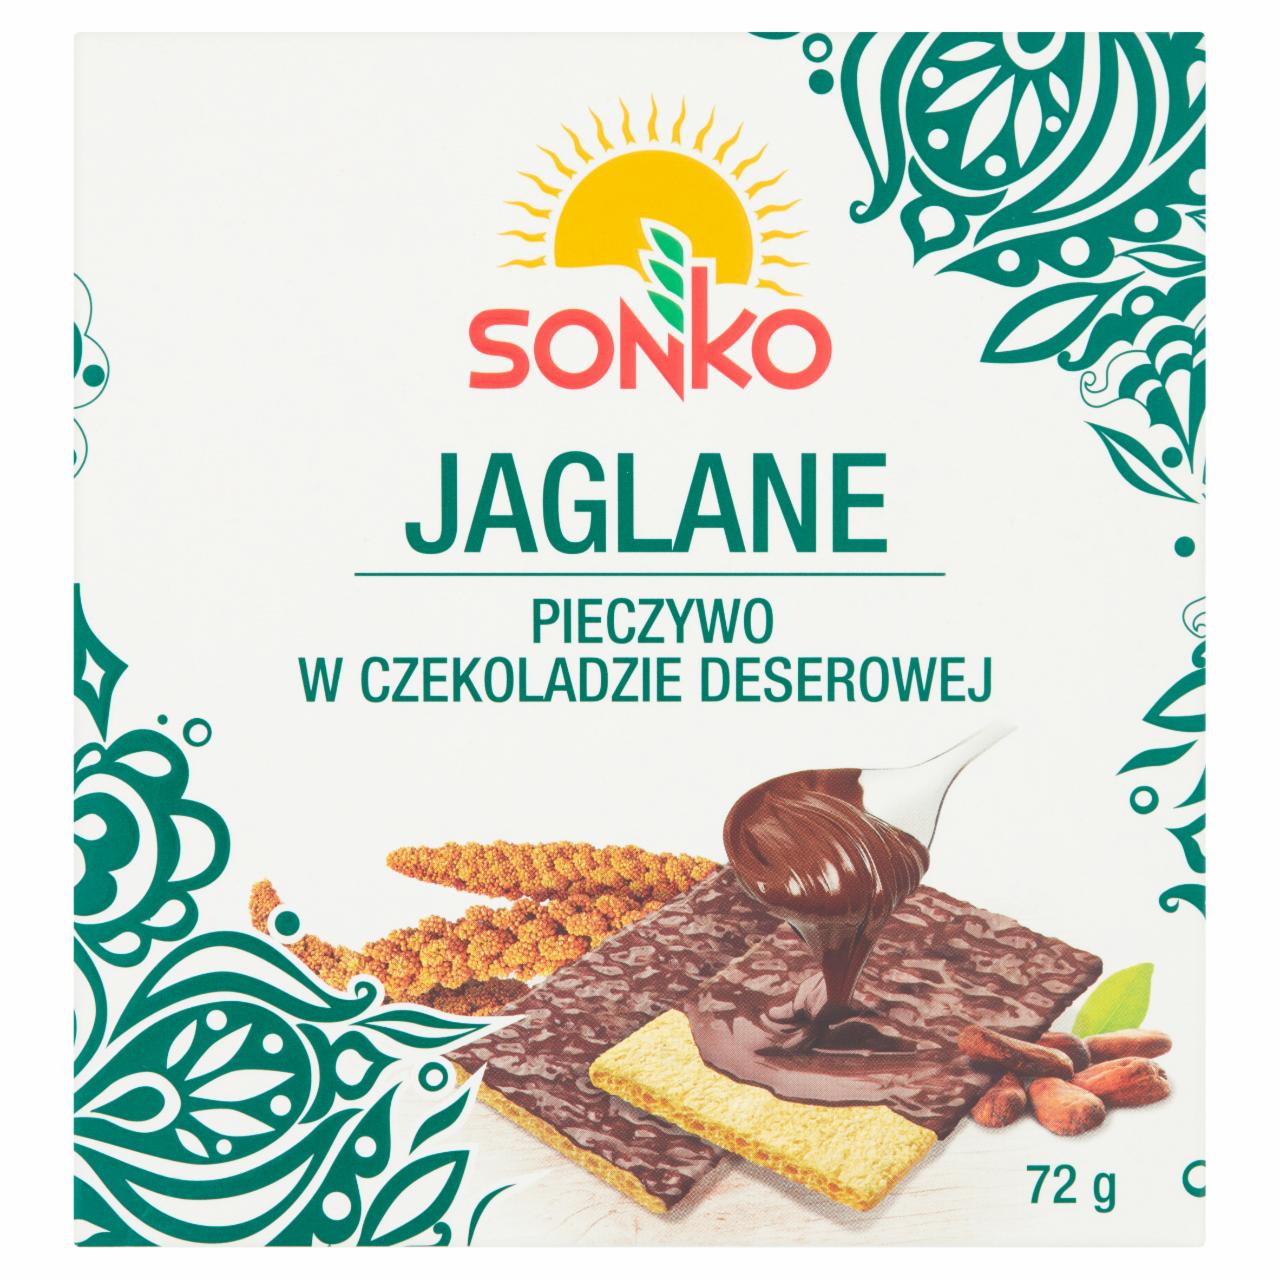 Zdjęcia - Sonko Pieczywo w czekoladzie deserowej jaglane 72 g